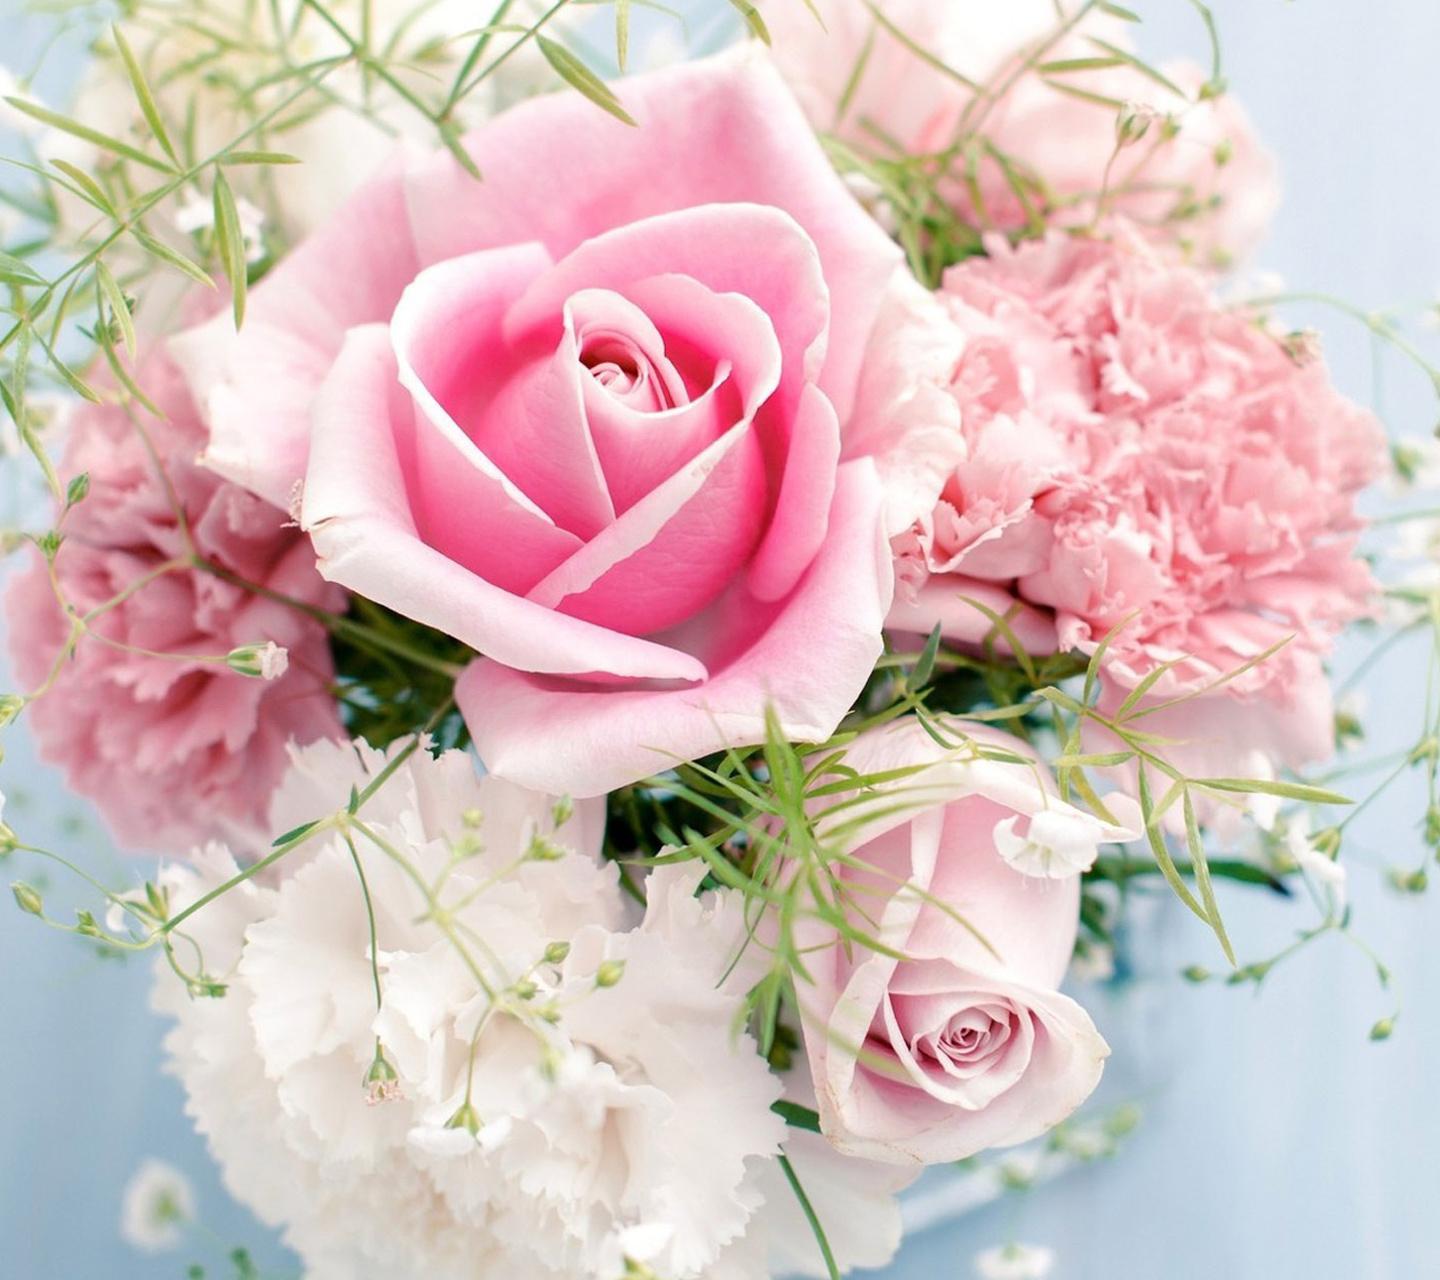 Download Beautiful rose hd wallpaper for laptop - Heart and rose hd  wallpaper for your mobile cell phone